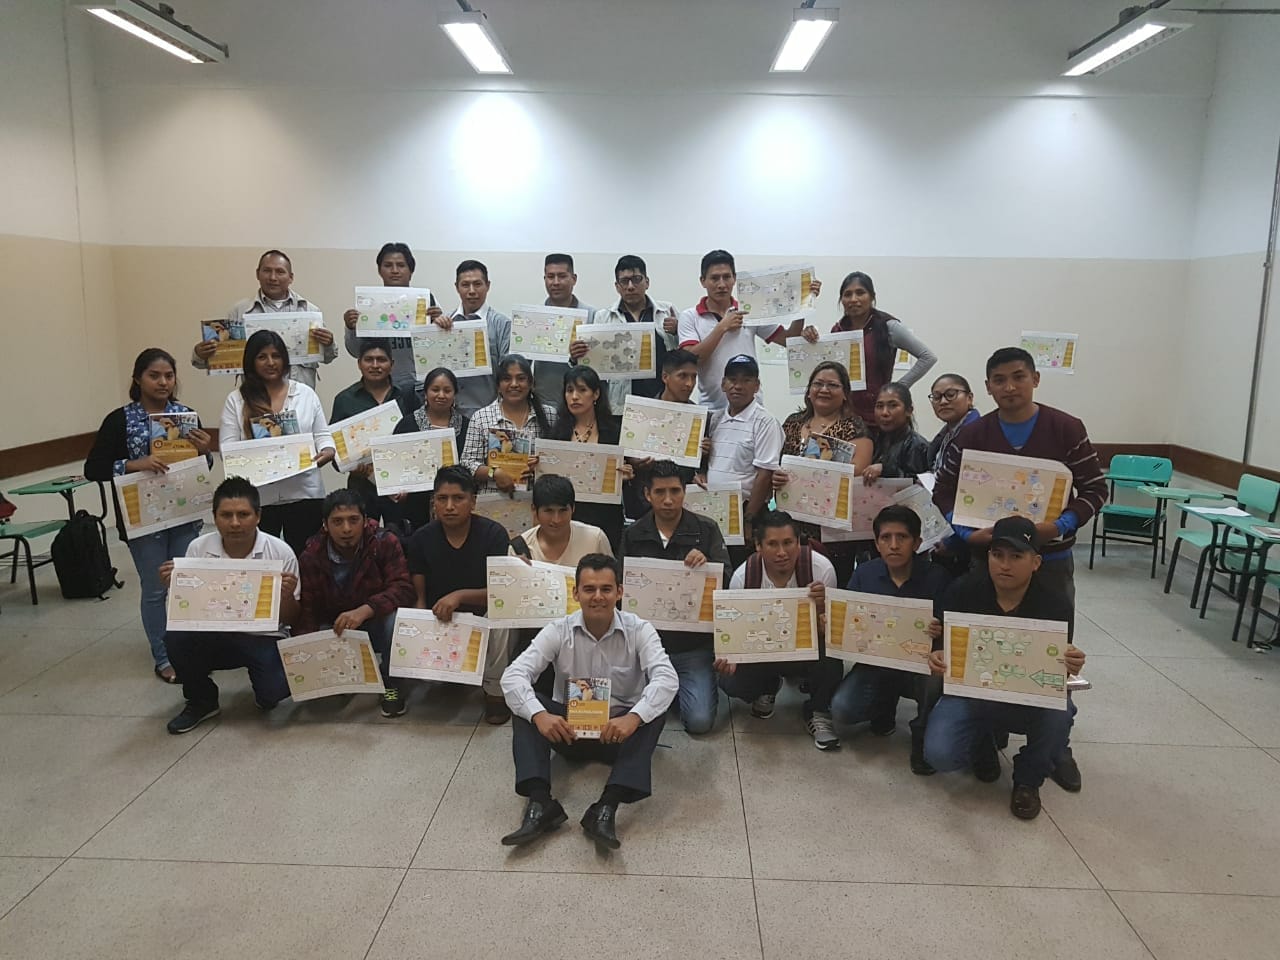 28 empreendedores imigrantes participam da formatura do Programa Tecendo Sonhos em parceria com a Organização Internacional do Trabalho e CAMI